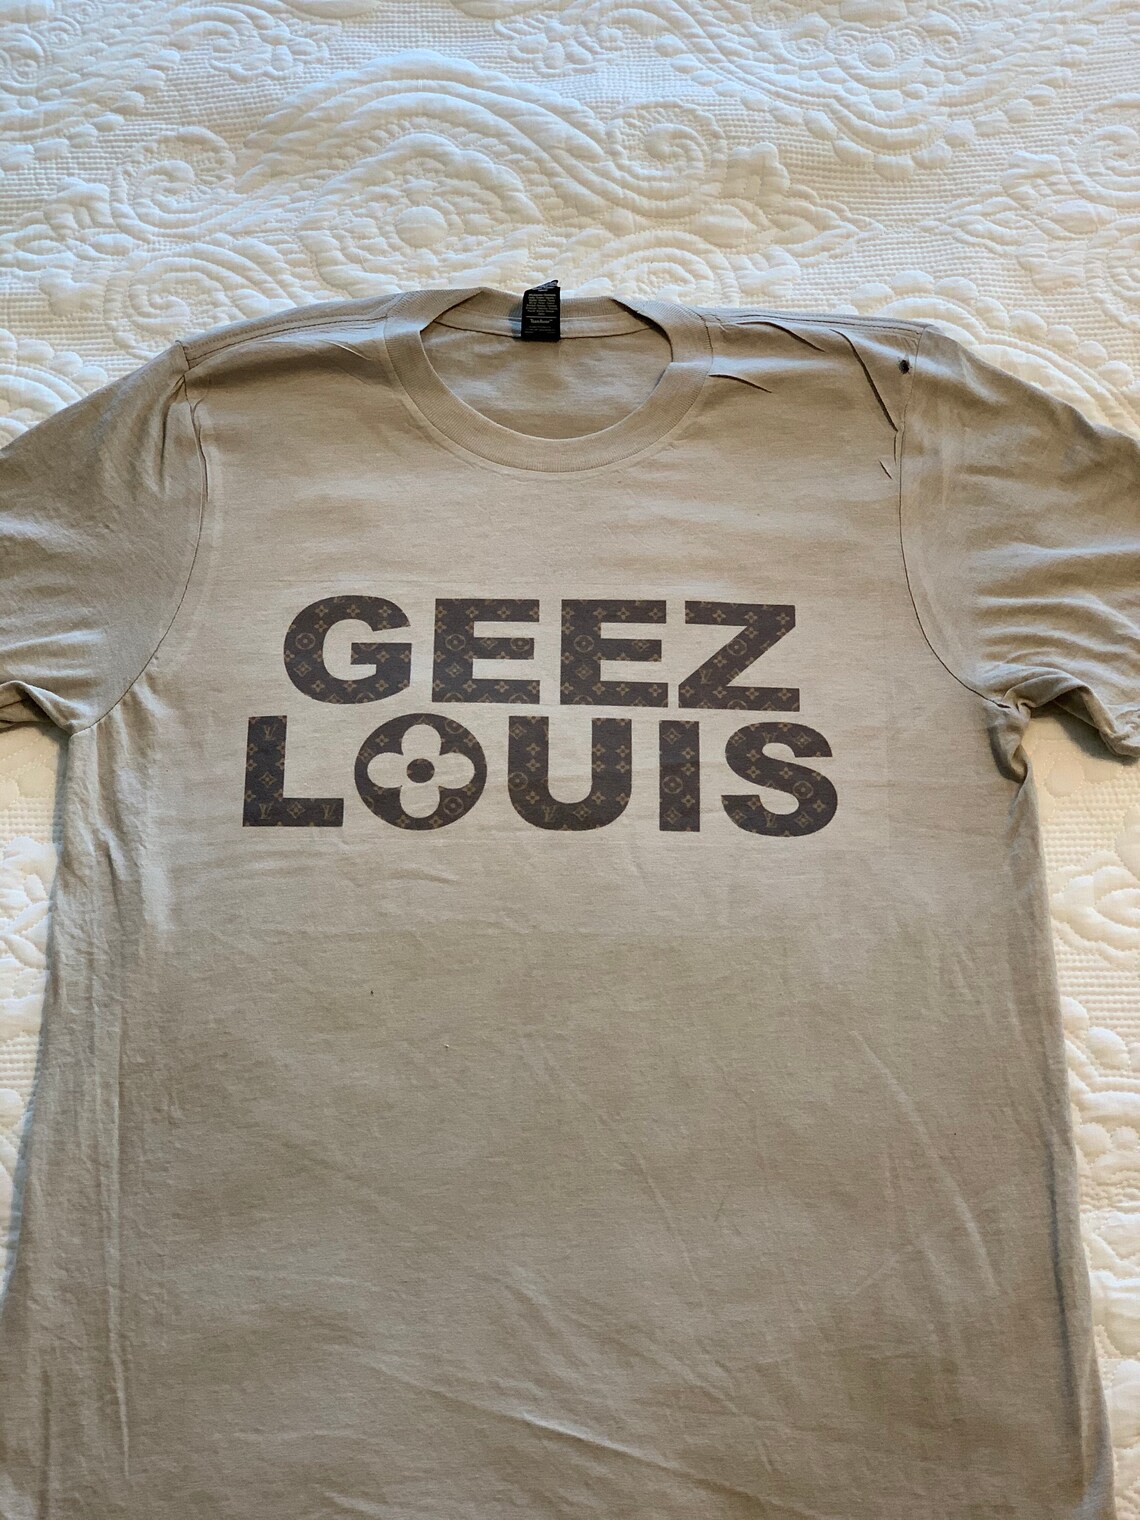 Geez Louis T-shirt | Etsy